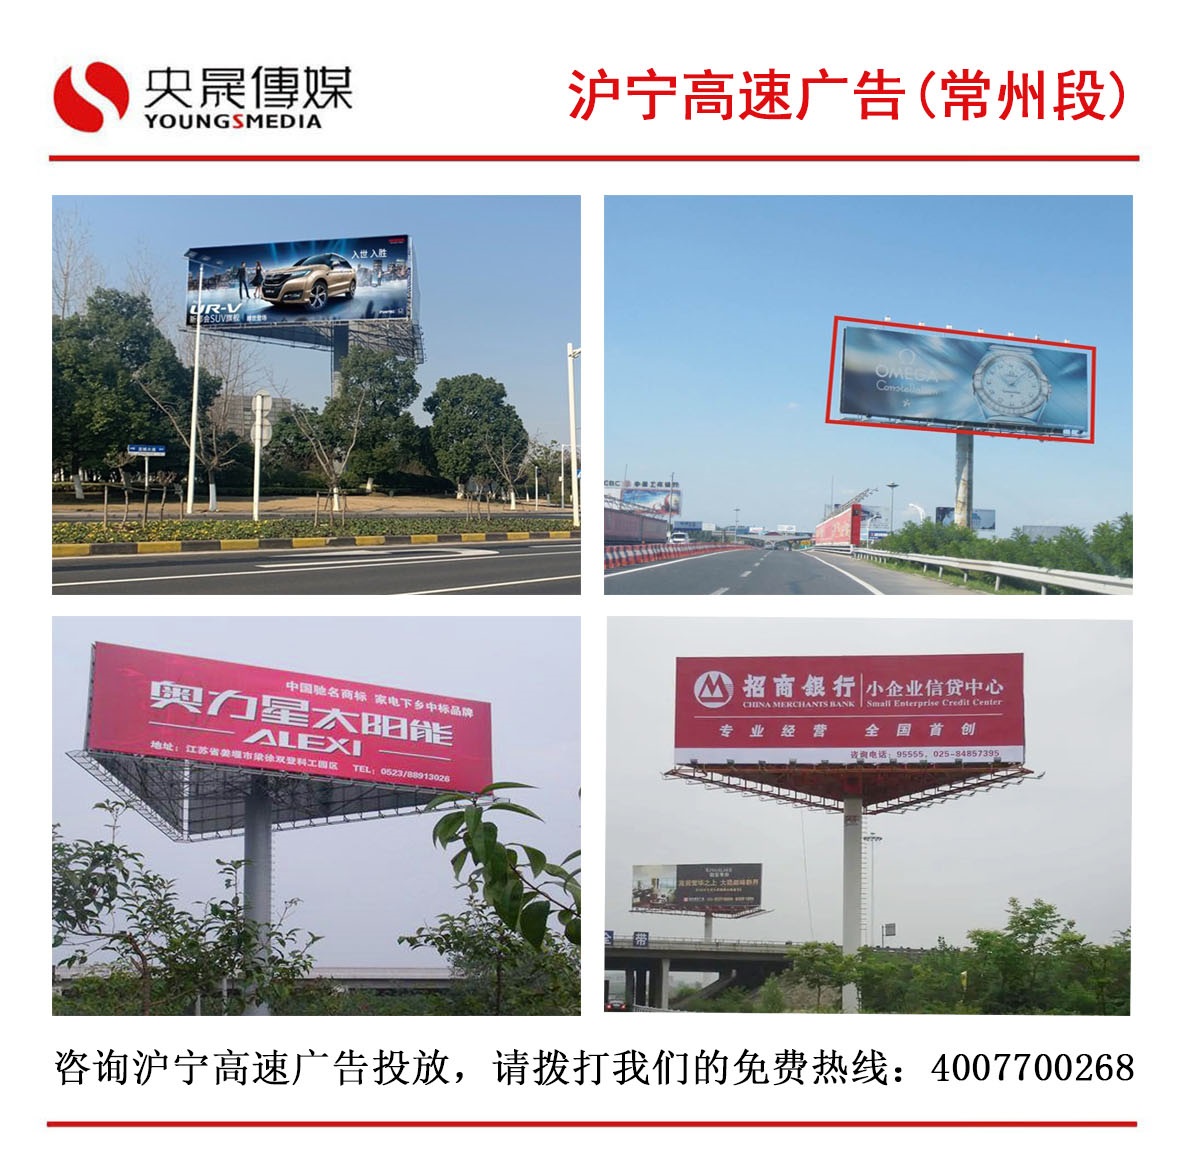 投放沪宁高速常州段广告、常州地区高速广告，认准央晟